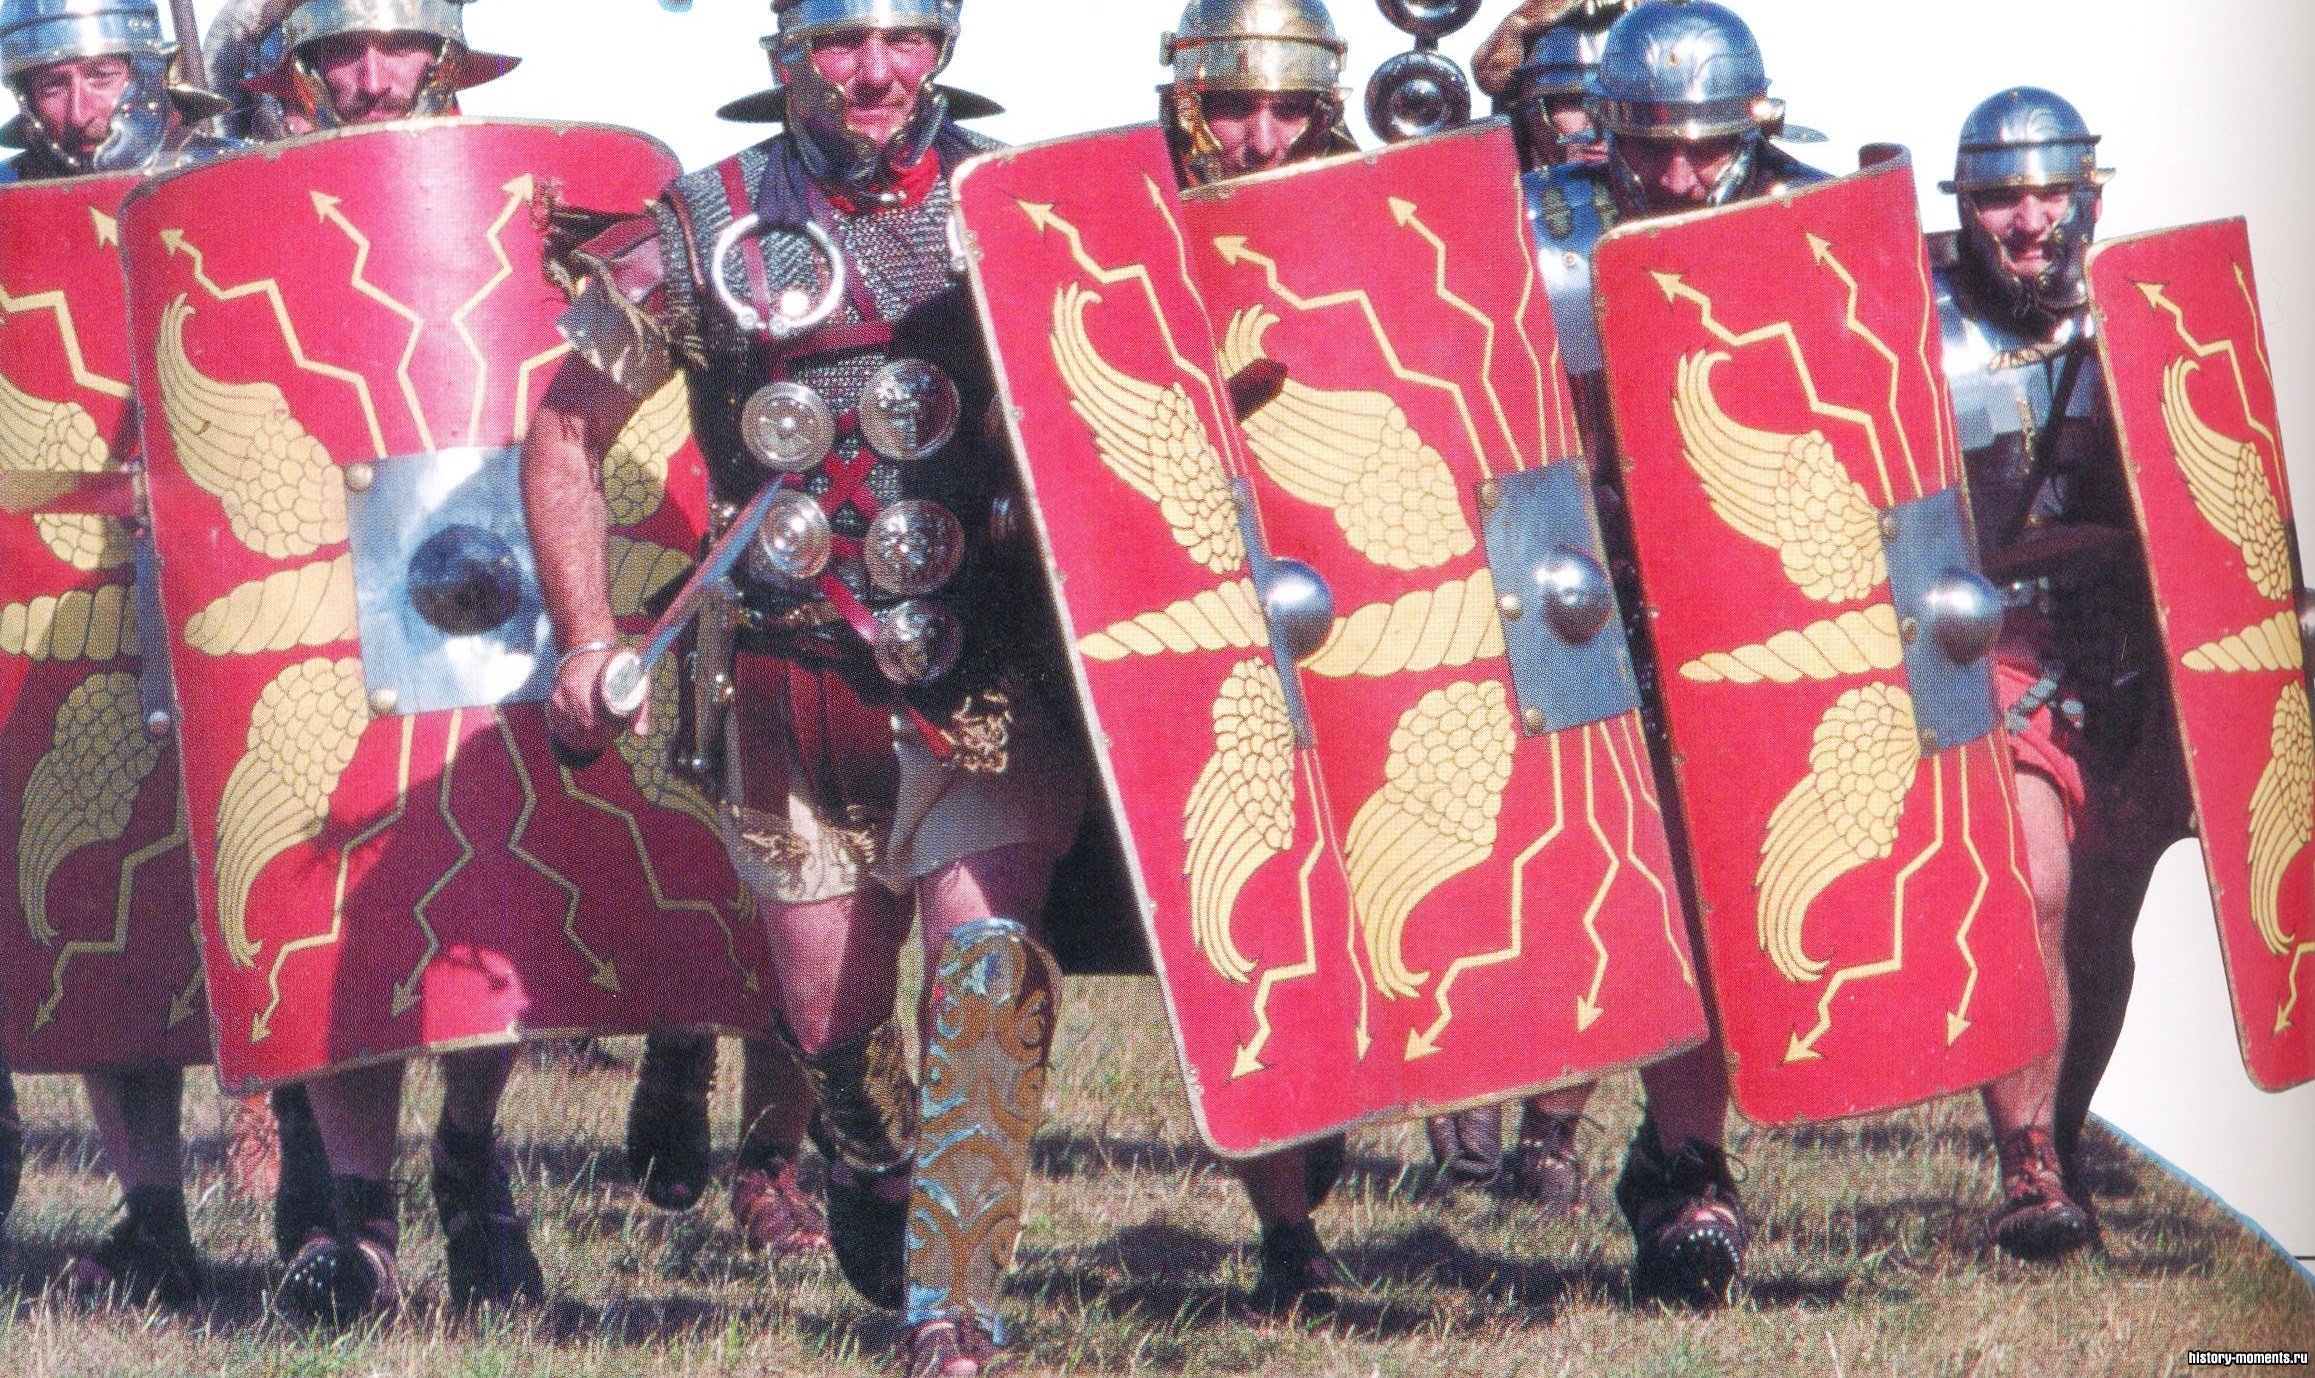 Здесь изображены люди в амуниции римских воинов. Человек в шлеме с перьями - это центурион (командир центурии - отряда из 80-100 солдат).